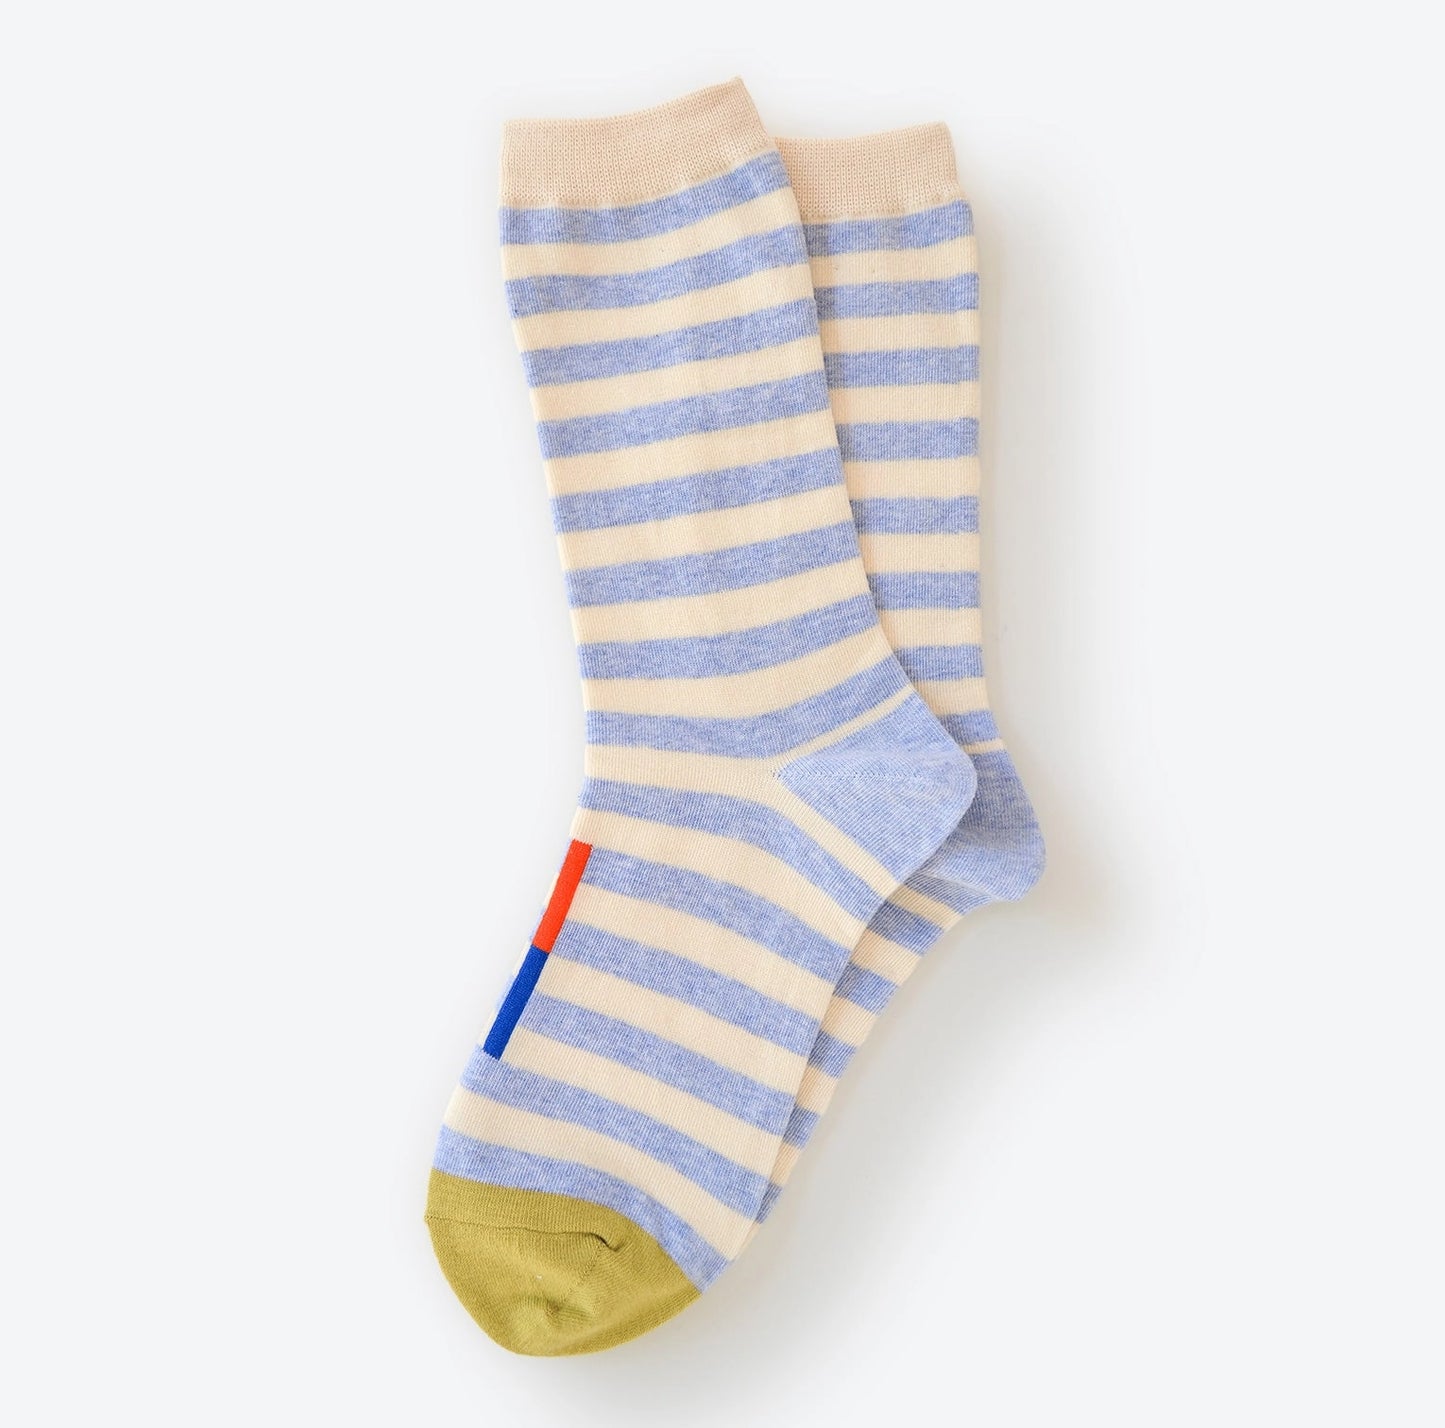 Greenwich Socks - Light Blue